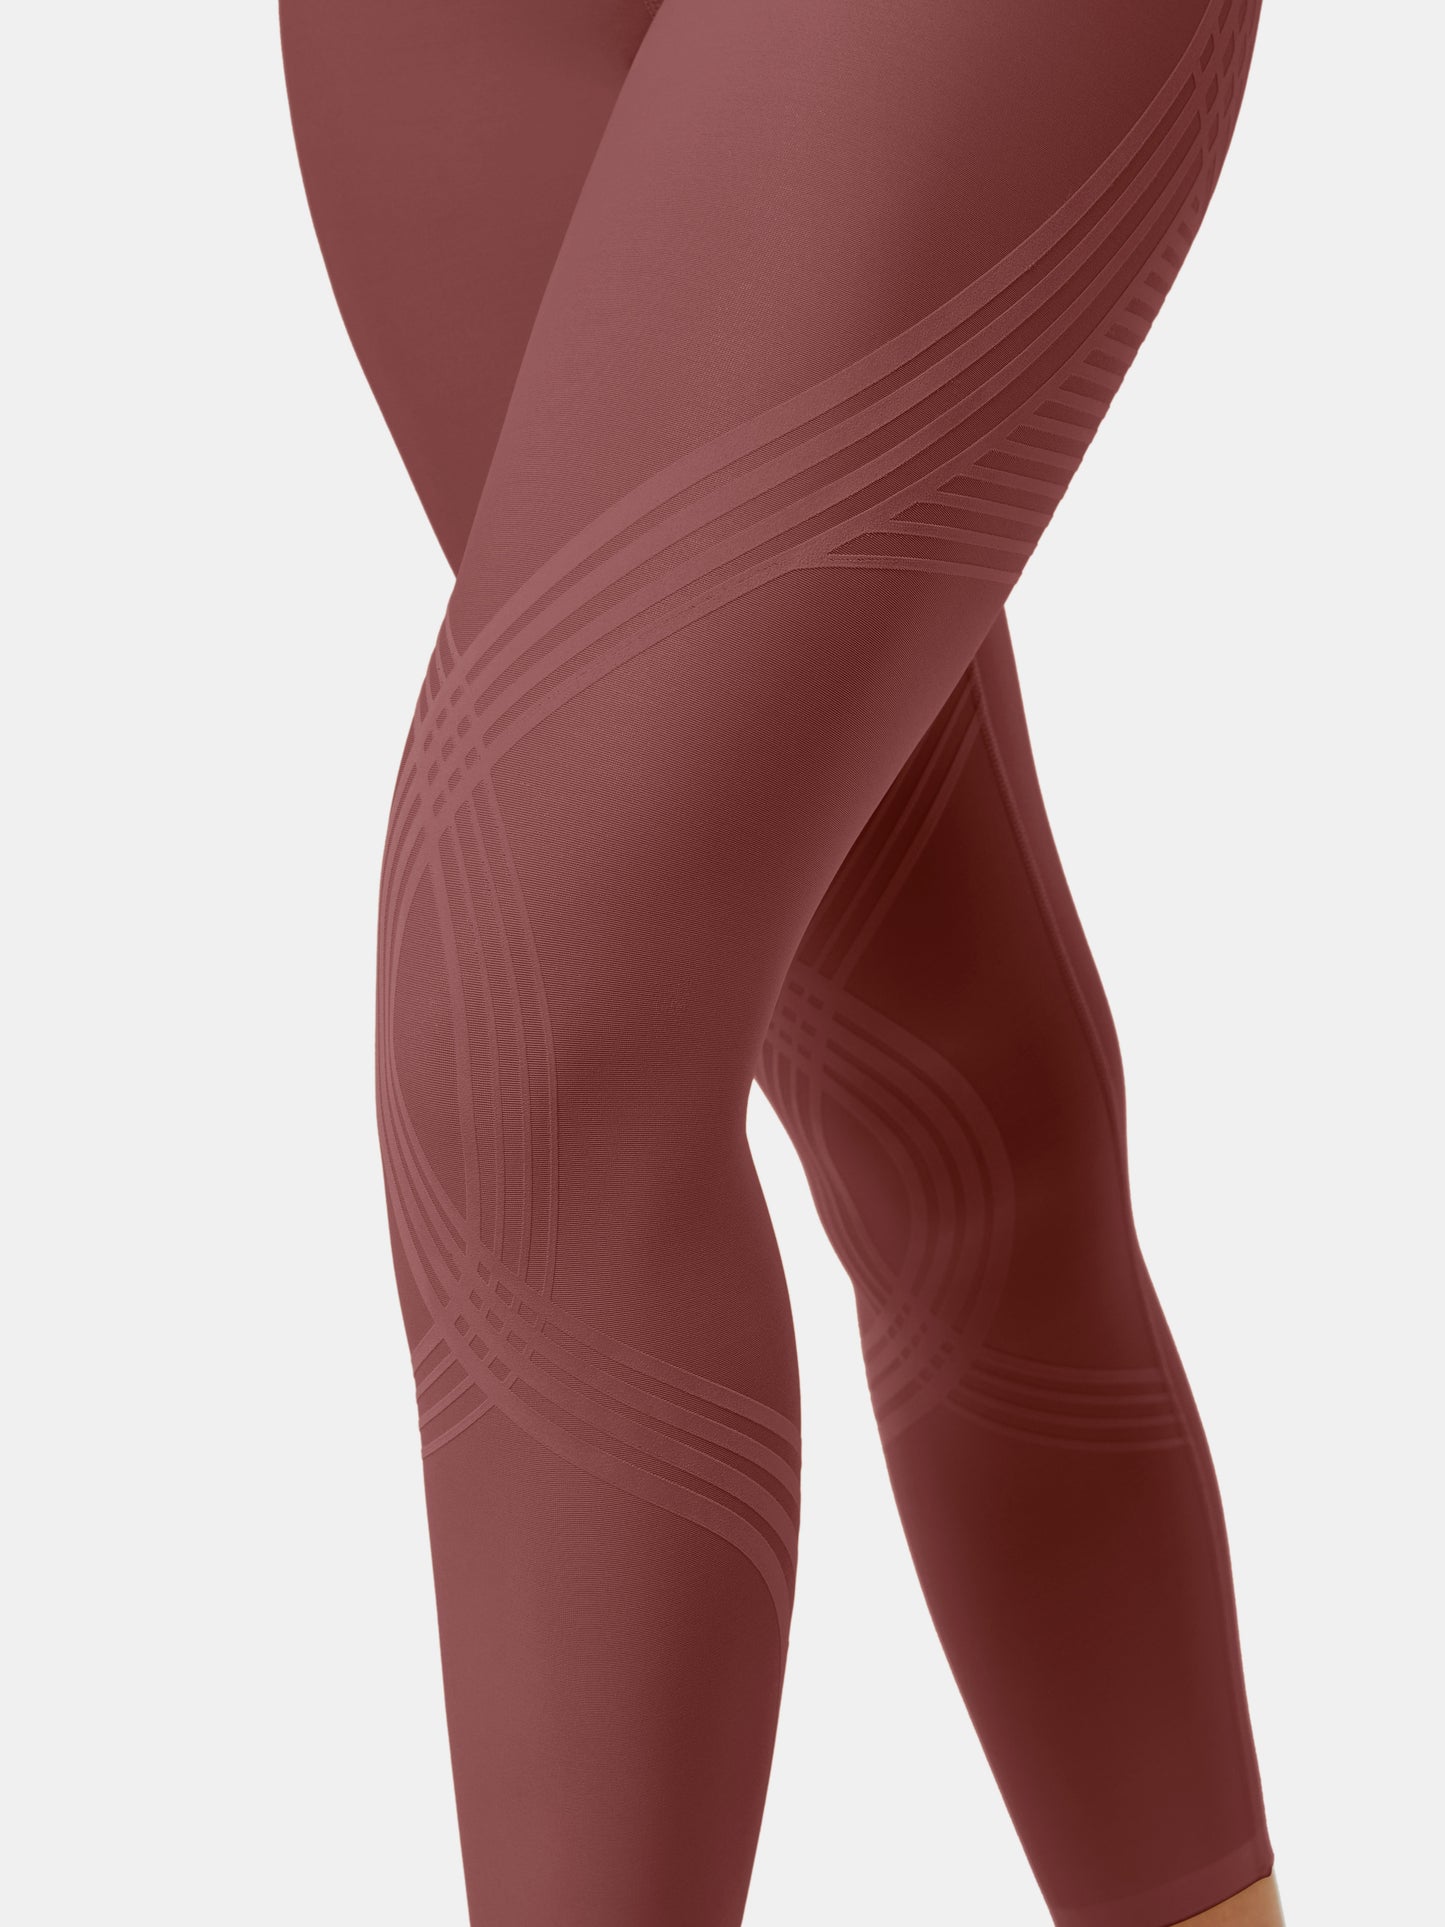 Body Sculpt 7/8 Leggings (Reversible Wear)